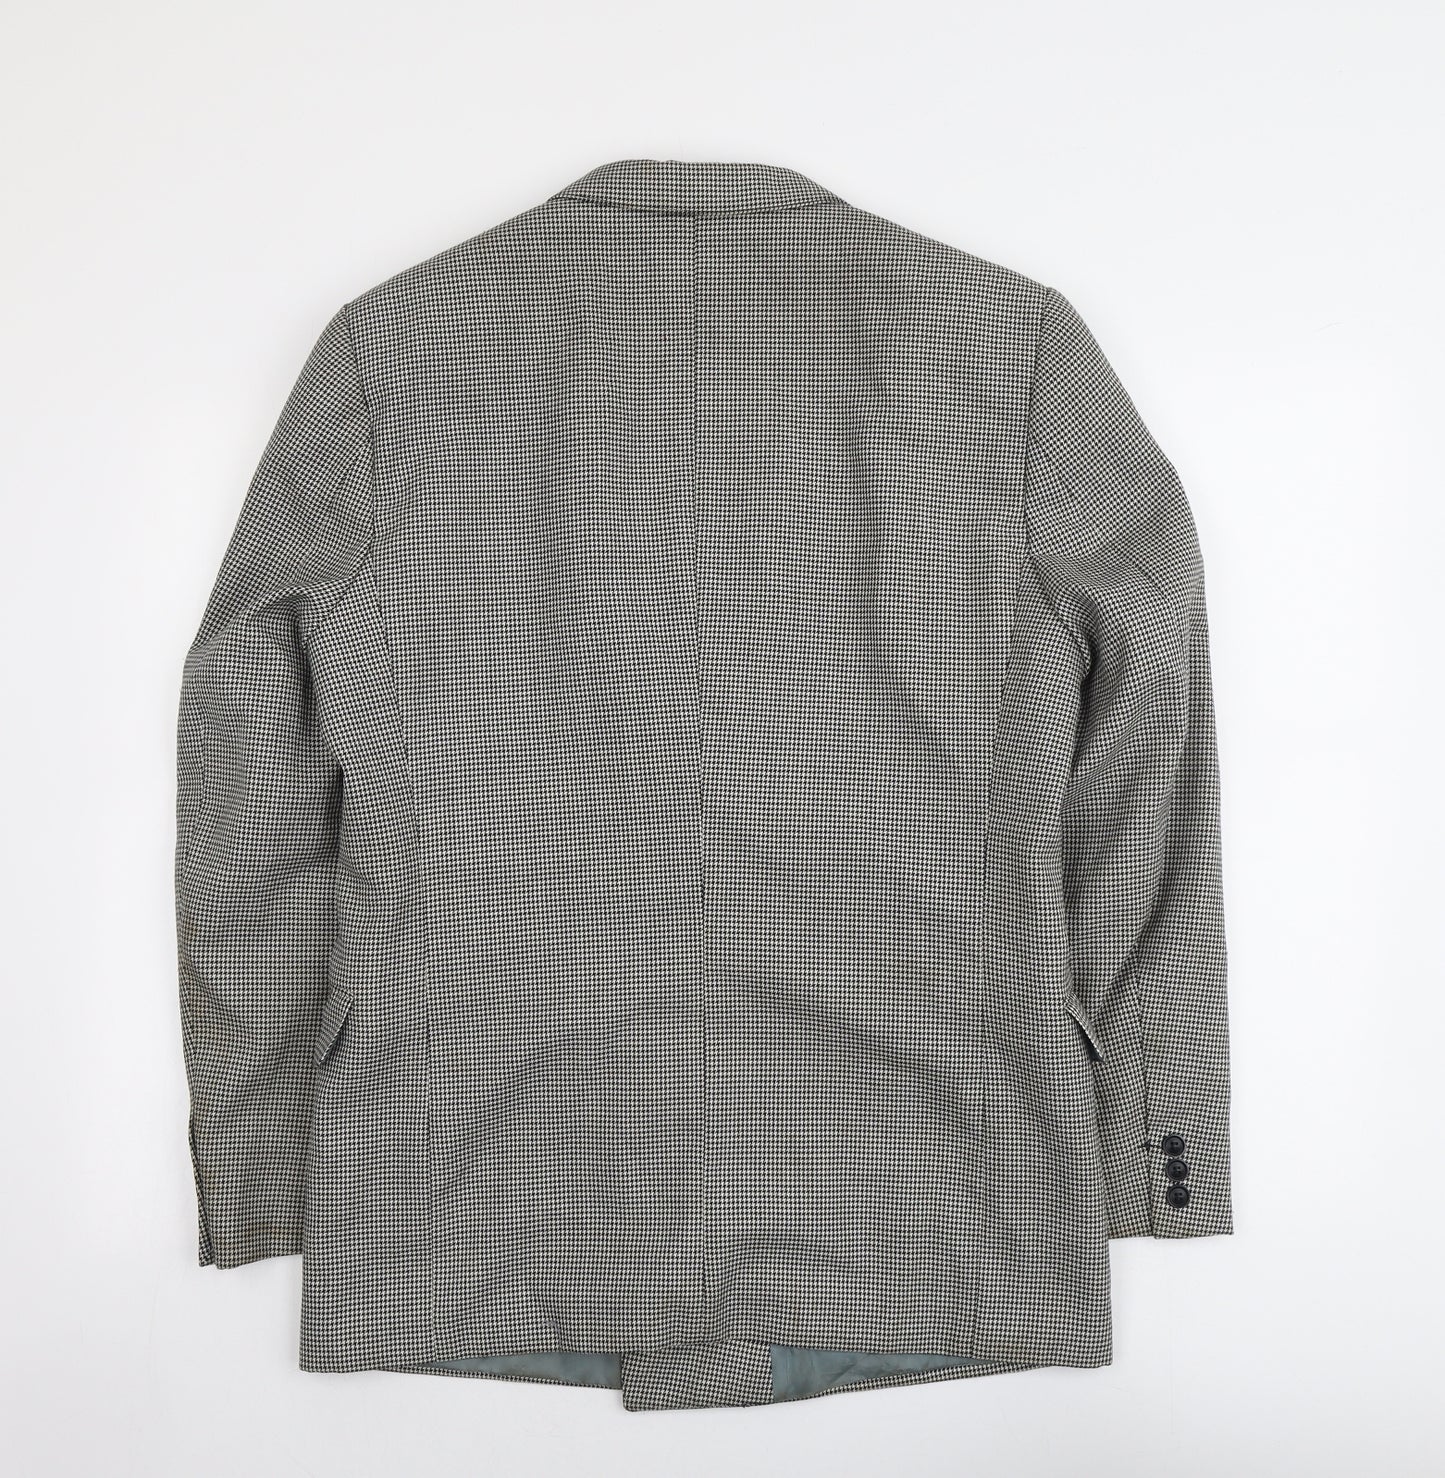 Skopes Mens Black Houndstooth Polyester Jacket Suit Jacket Size 42 Regular